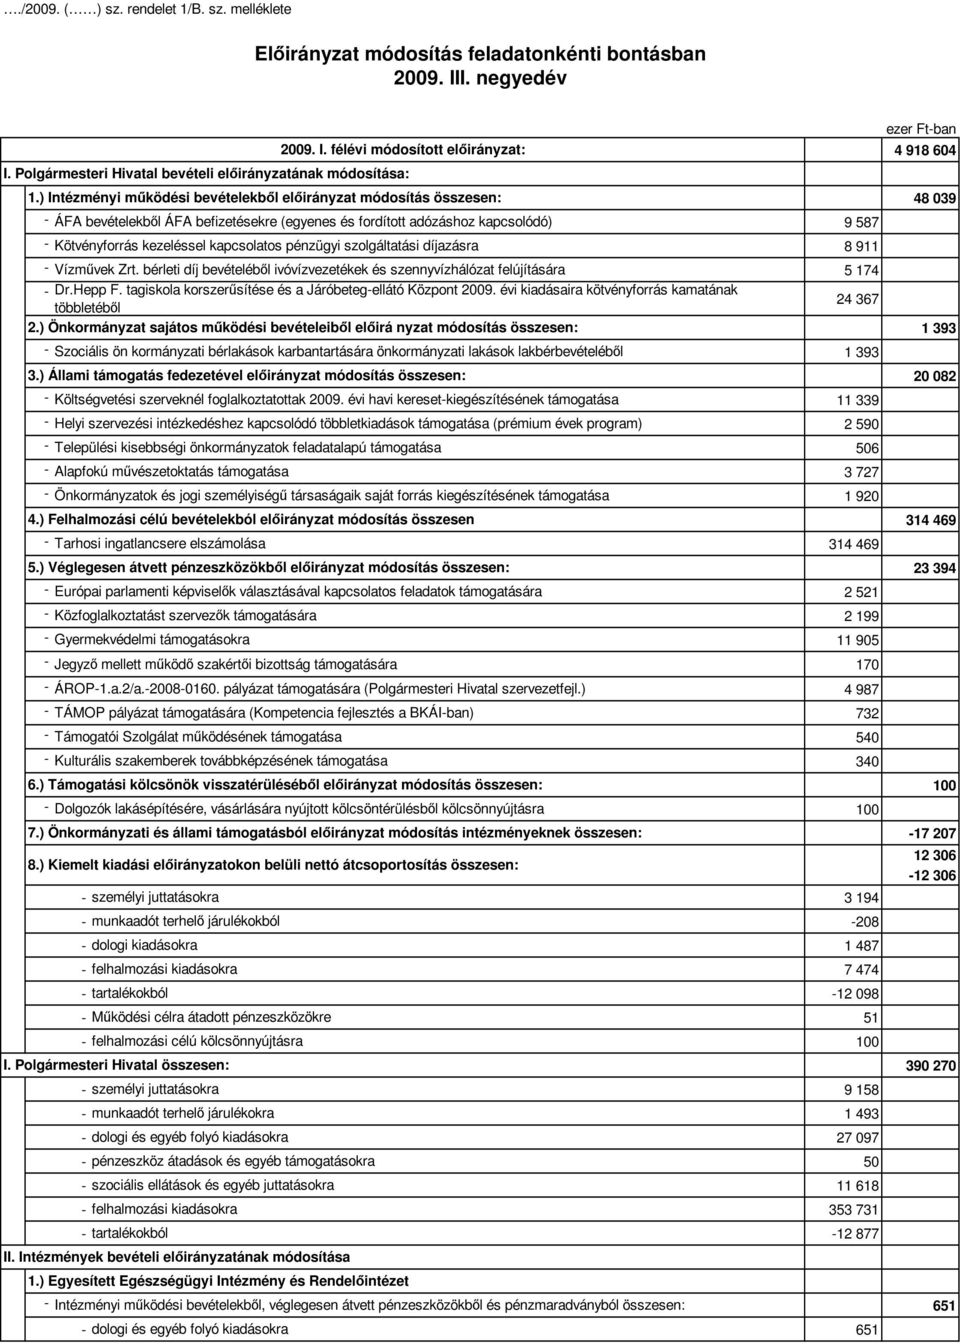 ) Intézményi mőködési bevételekbıl elıirányzat módosítás összesen: - ÁFA bevételekbıl ÁFA befizetésekre (egyenes és fordított adózáshoz kapcsolódó) 9 587 - Kötvényforrás kezeléssel kapcsolatos